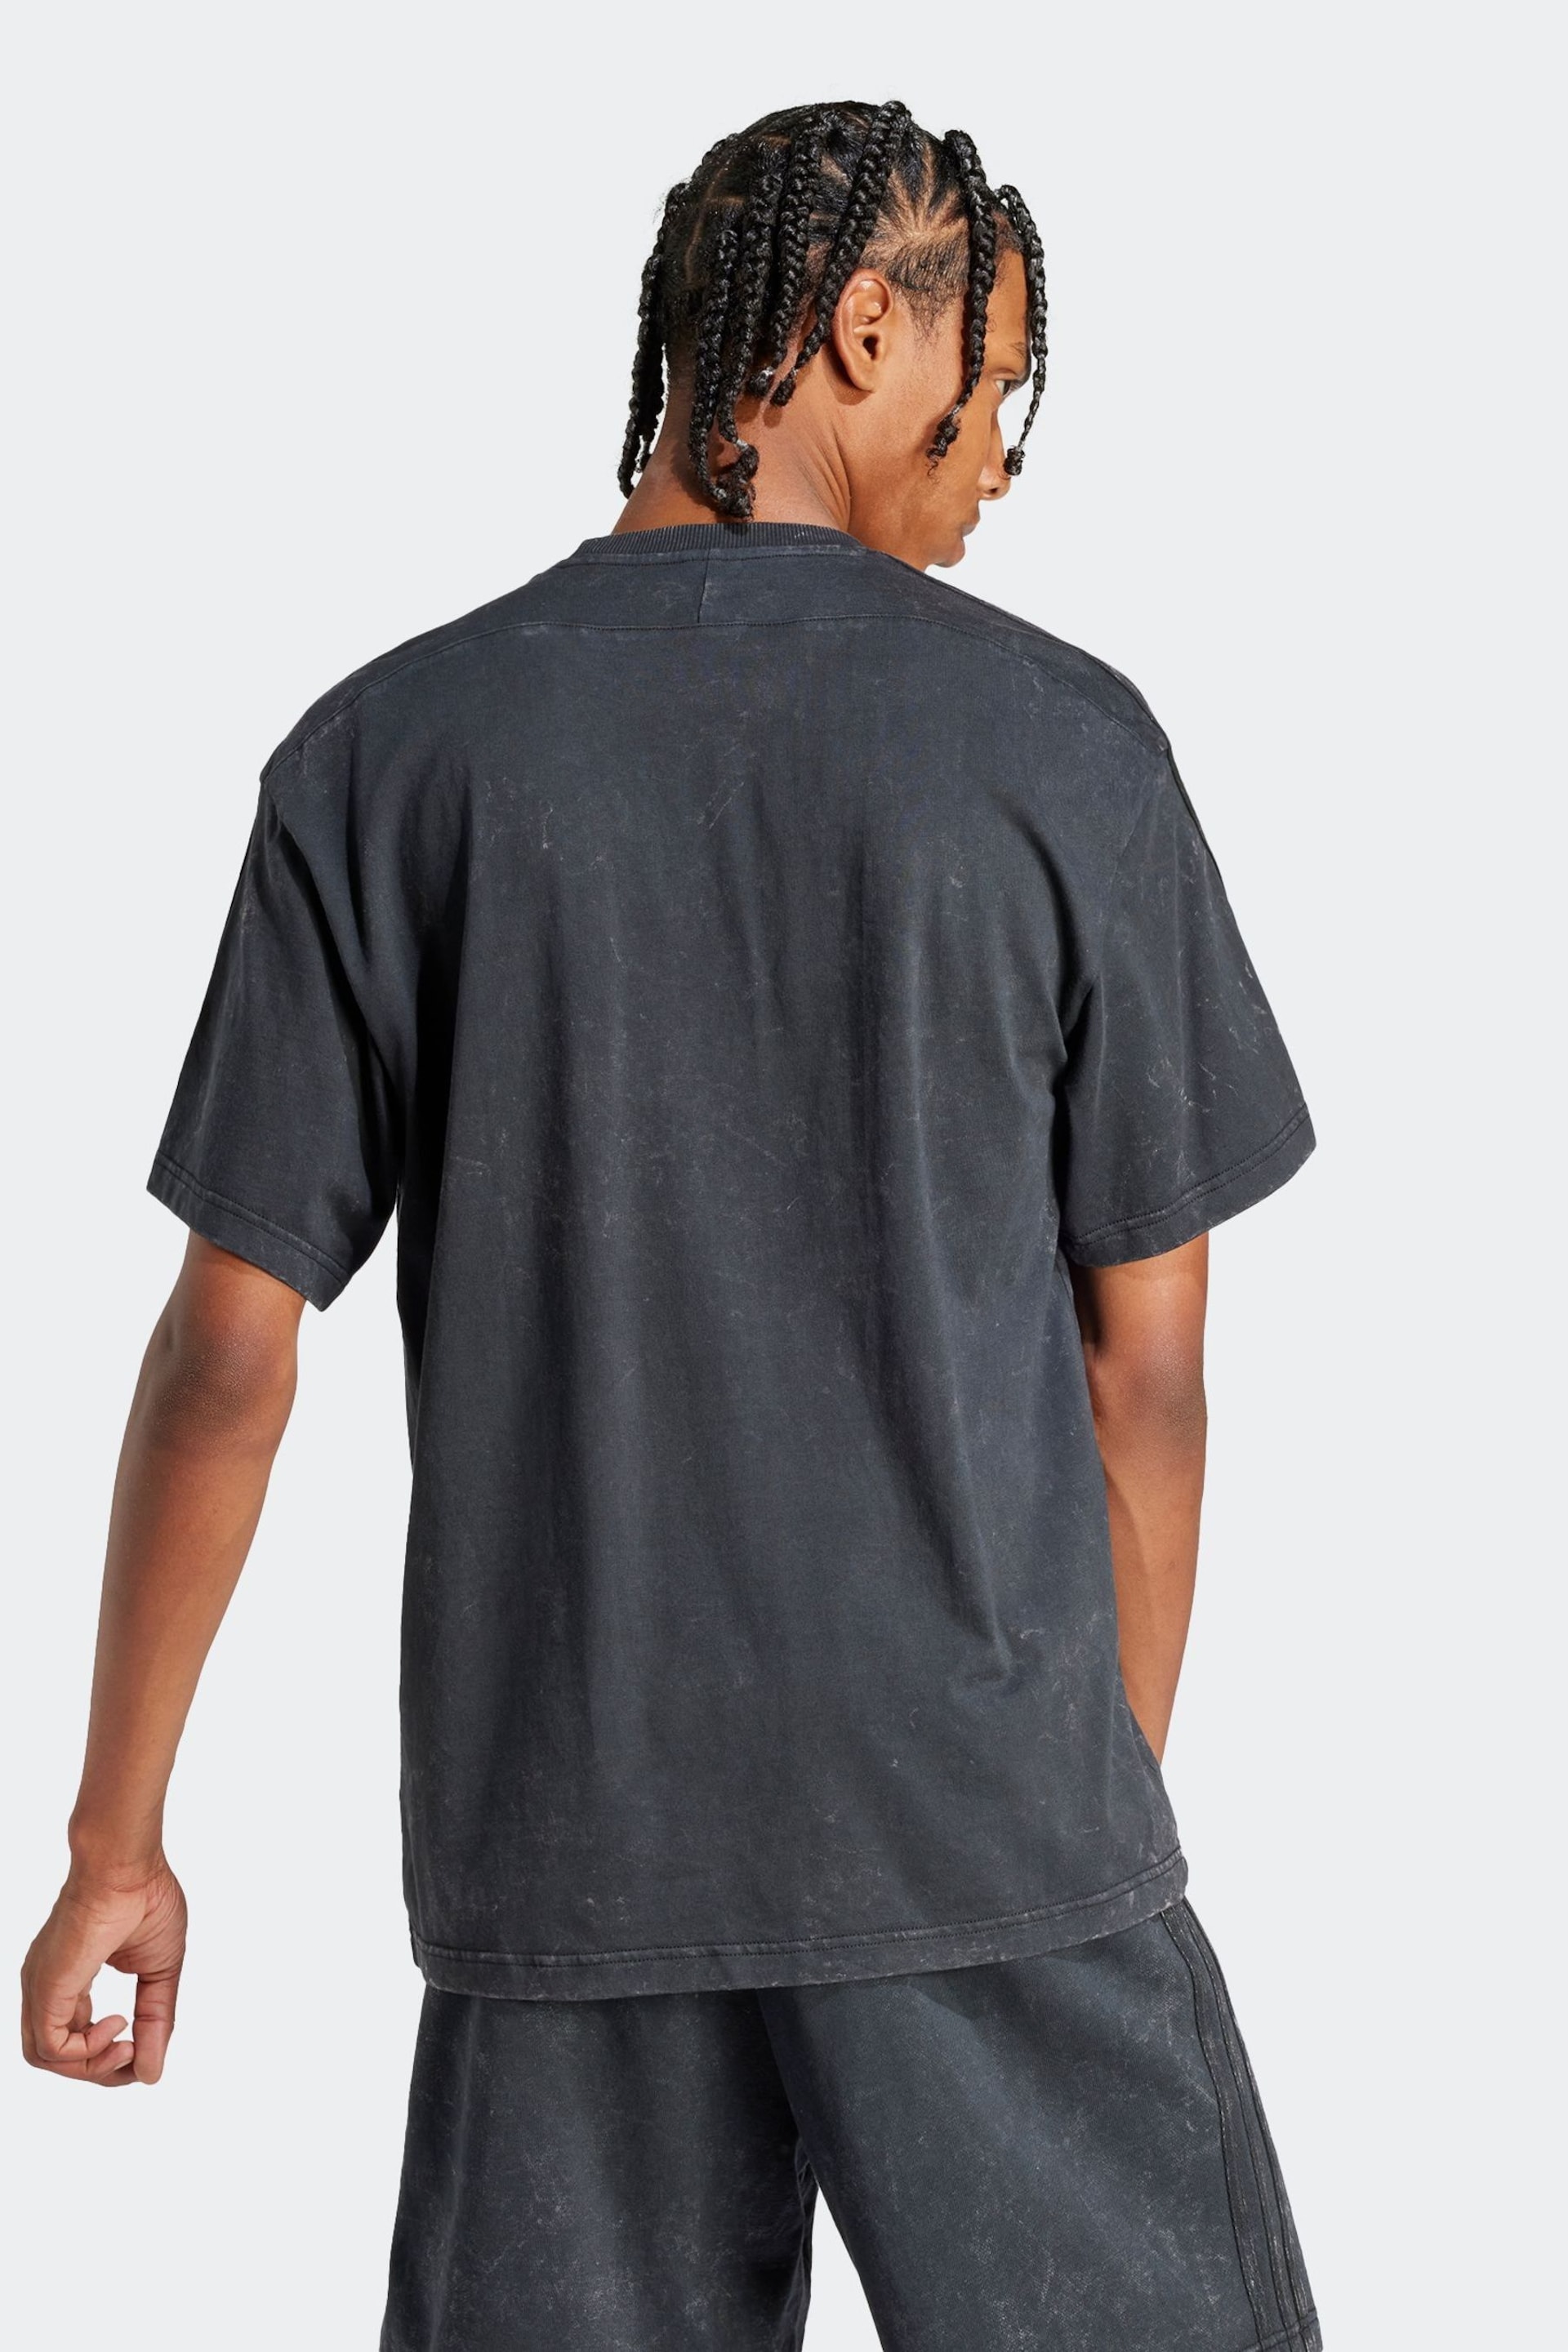 adidas Grey Sportswear All Szn 3-Stripes Garment Wash T-Shirt - Image 2 of 6